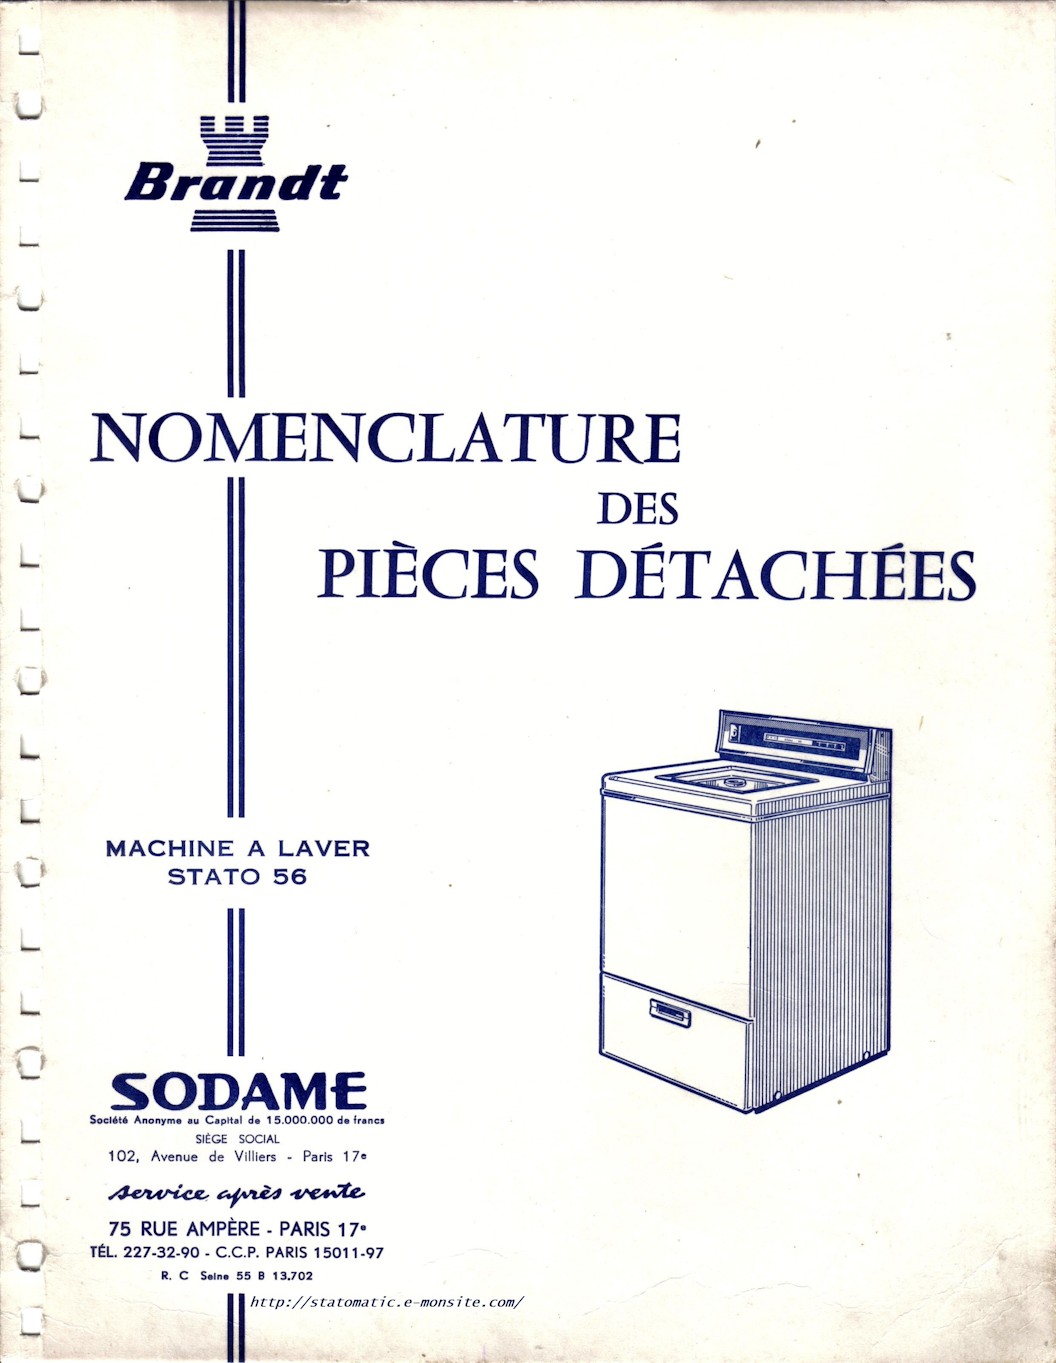 Machine à laver Brandt Stato 56, nomenclature des pièces détachées